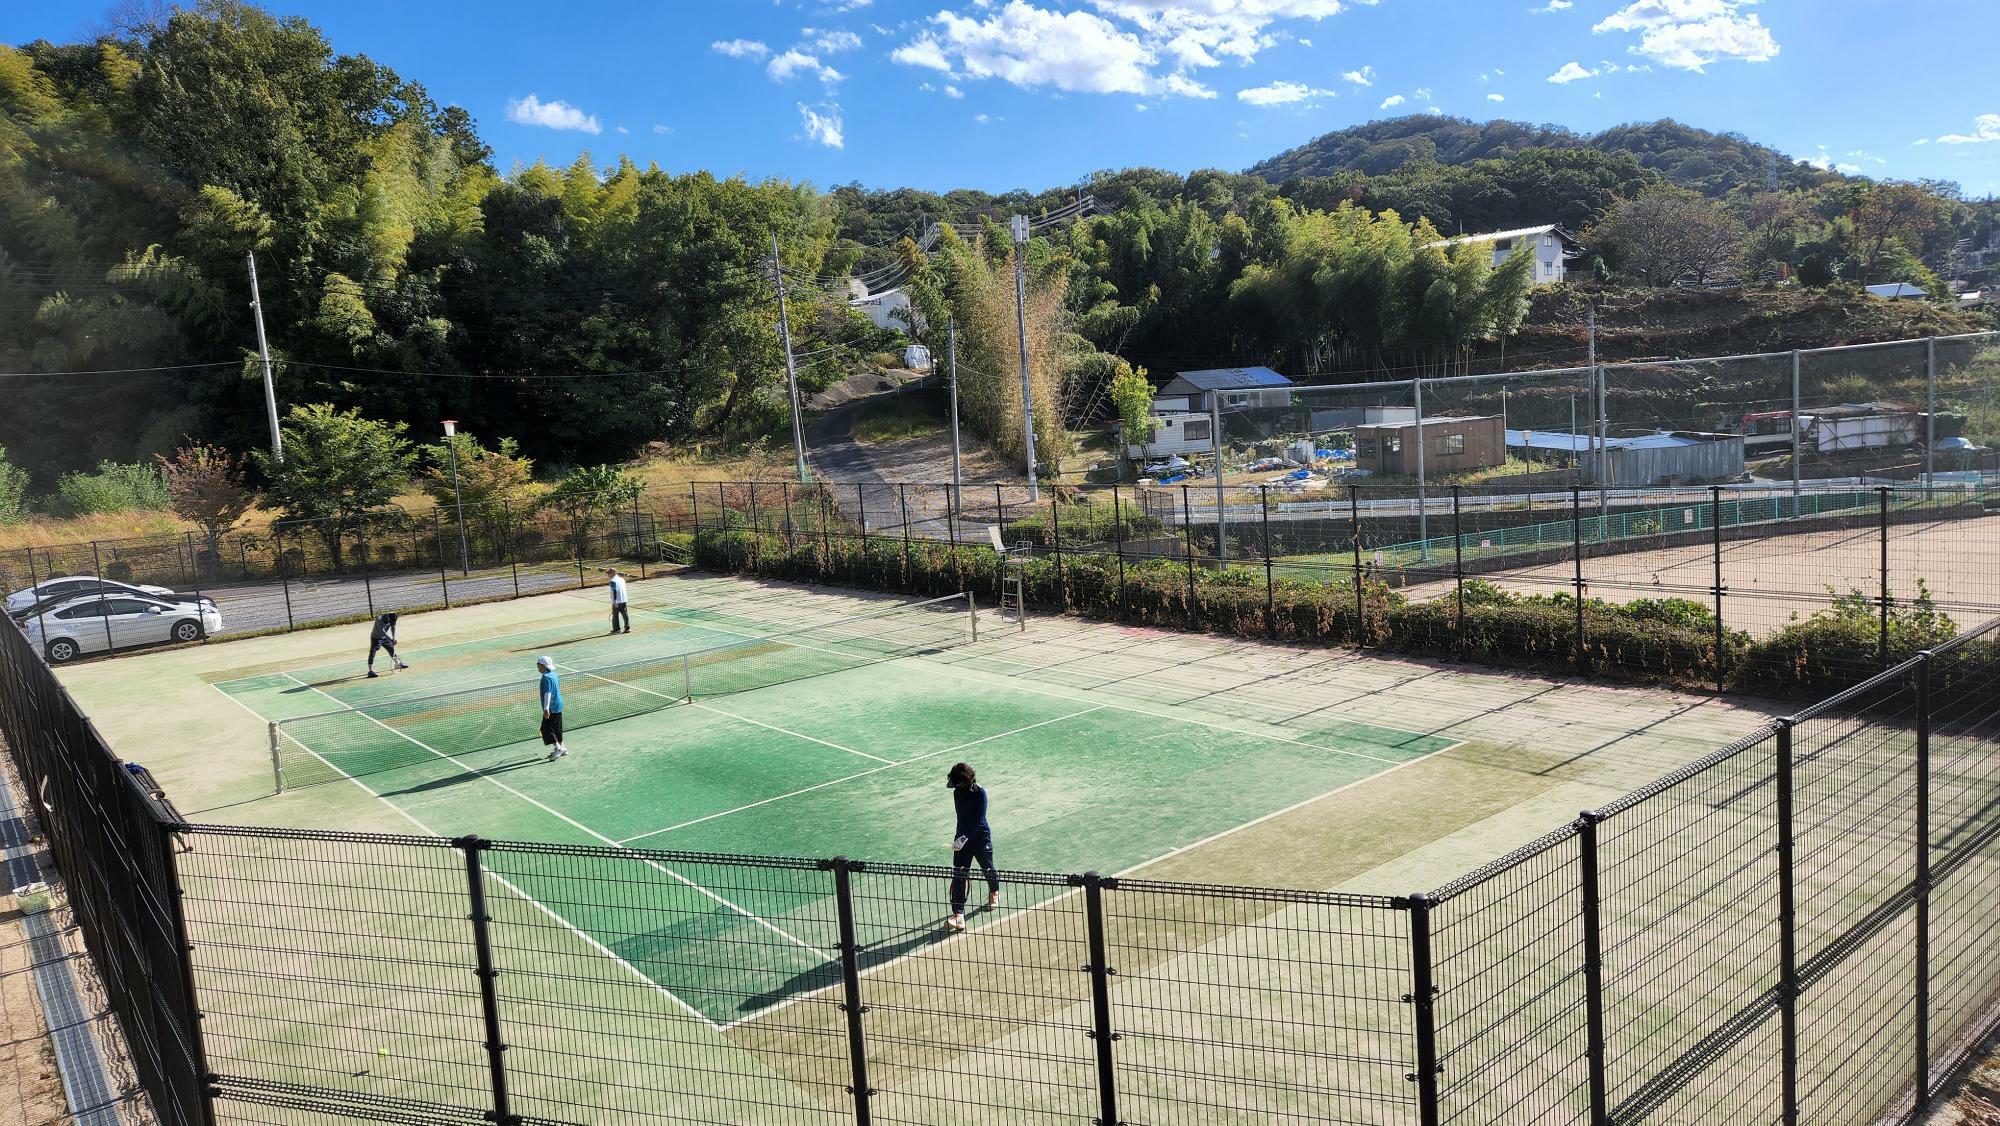 テニスコートではテニスを楽しんでいる人たちがいました。